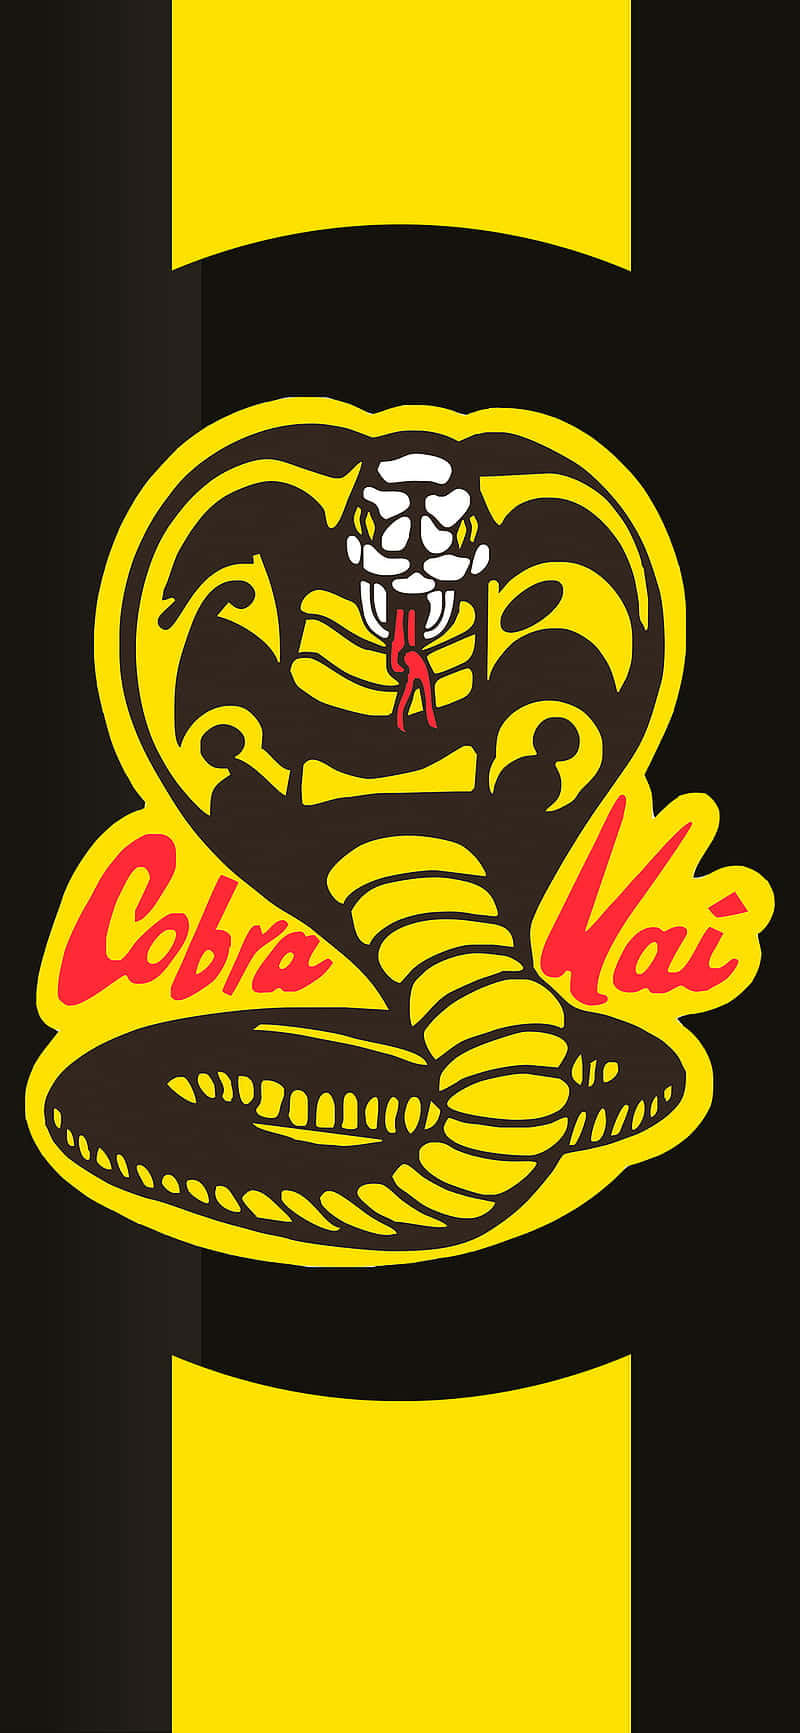 Kom ind i kampen med Cobra Kai iPhone Xr tapet.